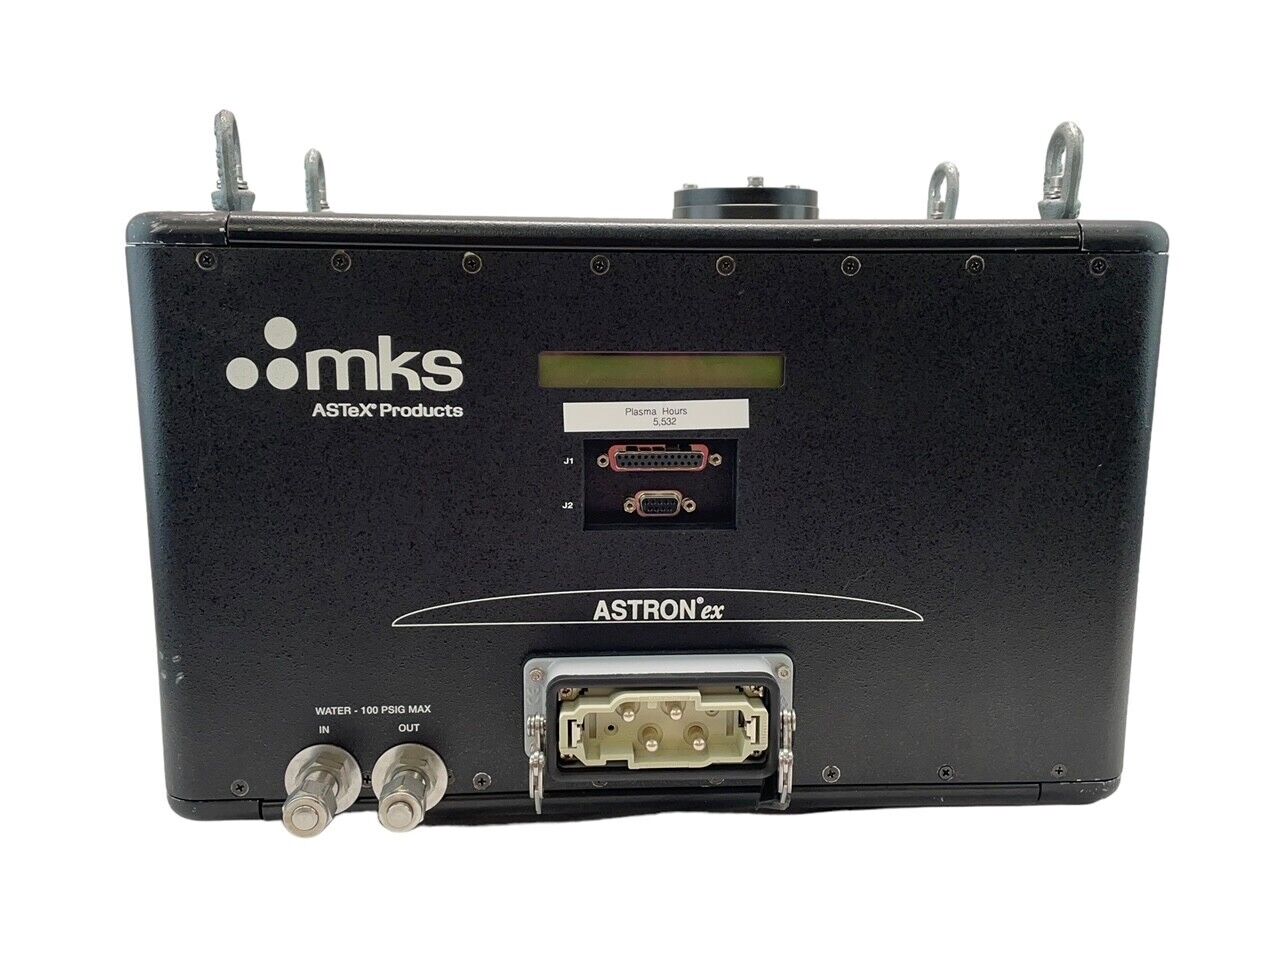 MKS AX3151 